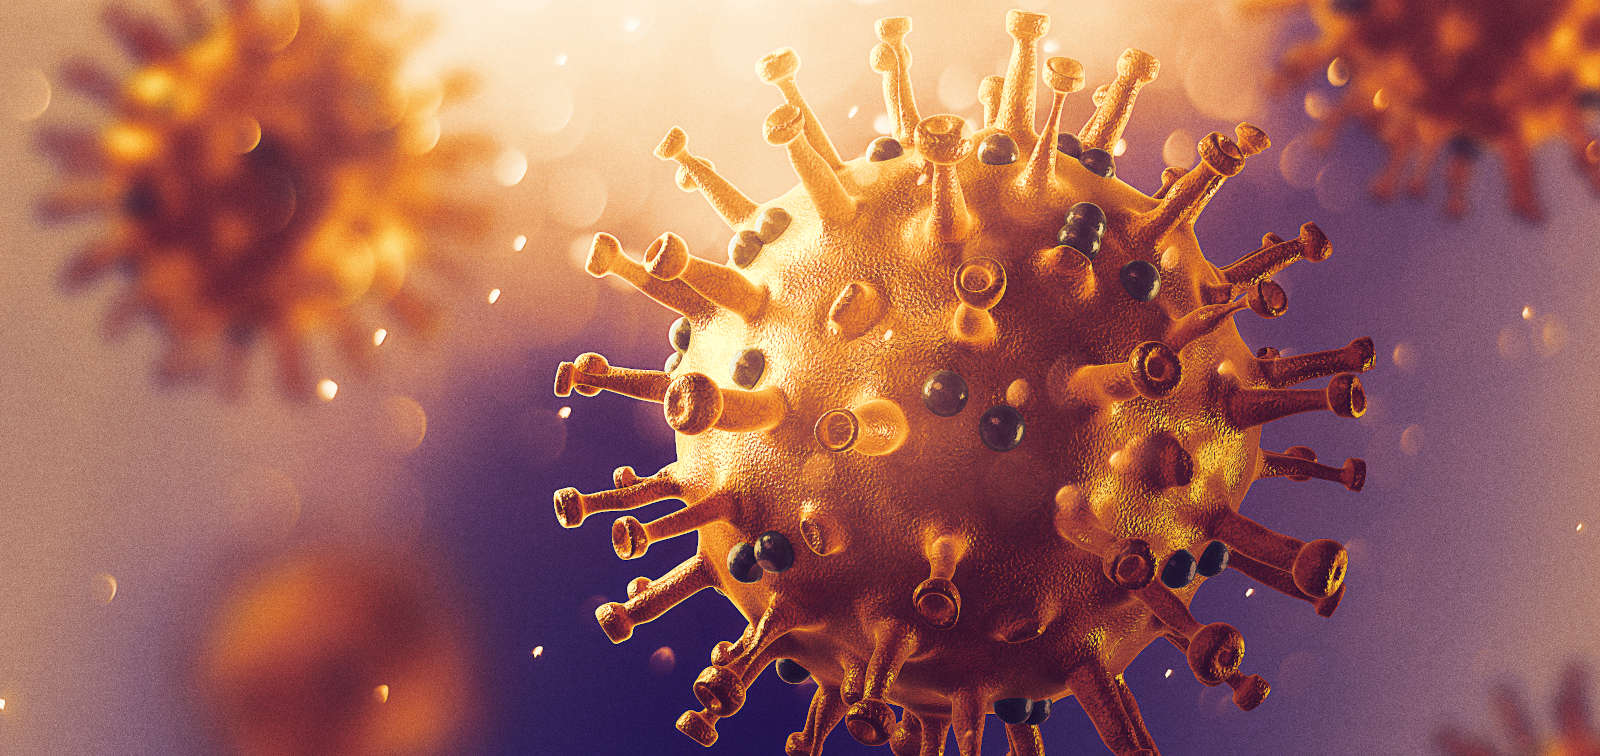 Coronavirus 3D image